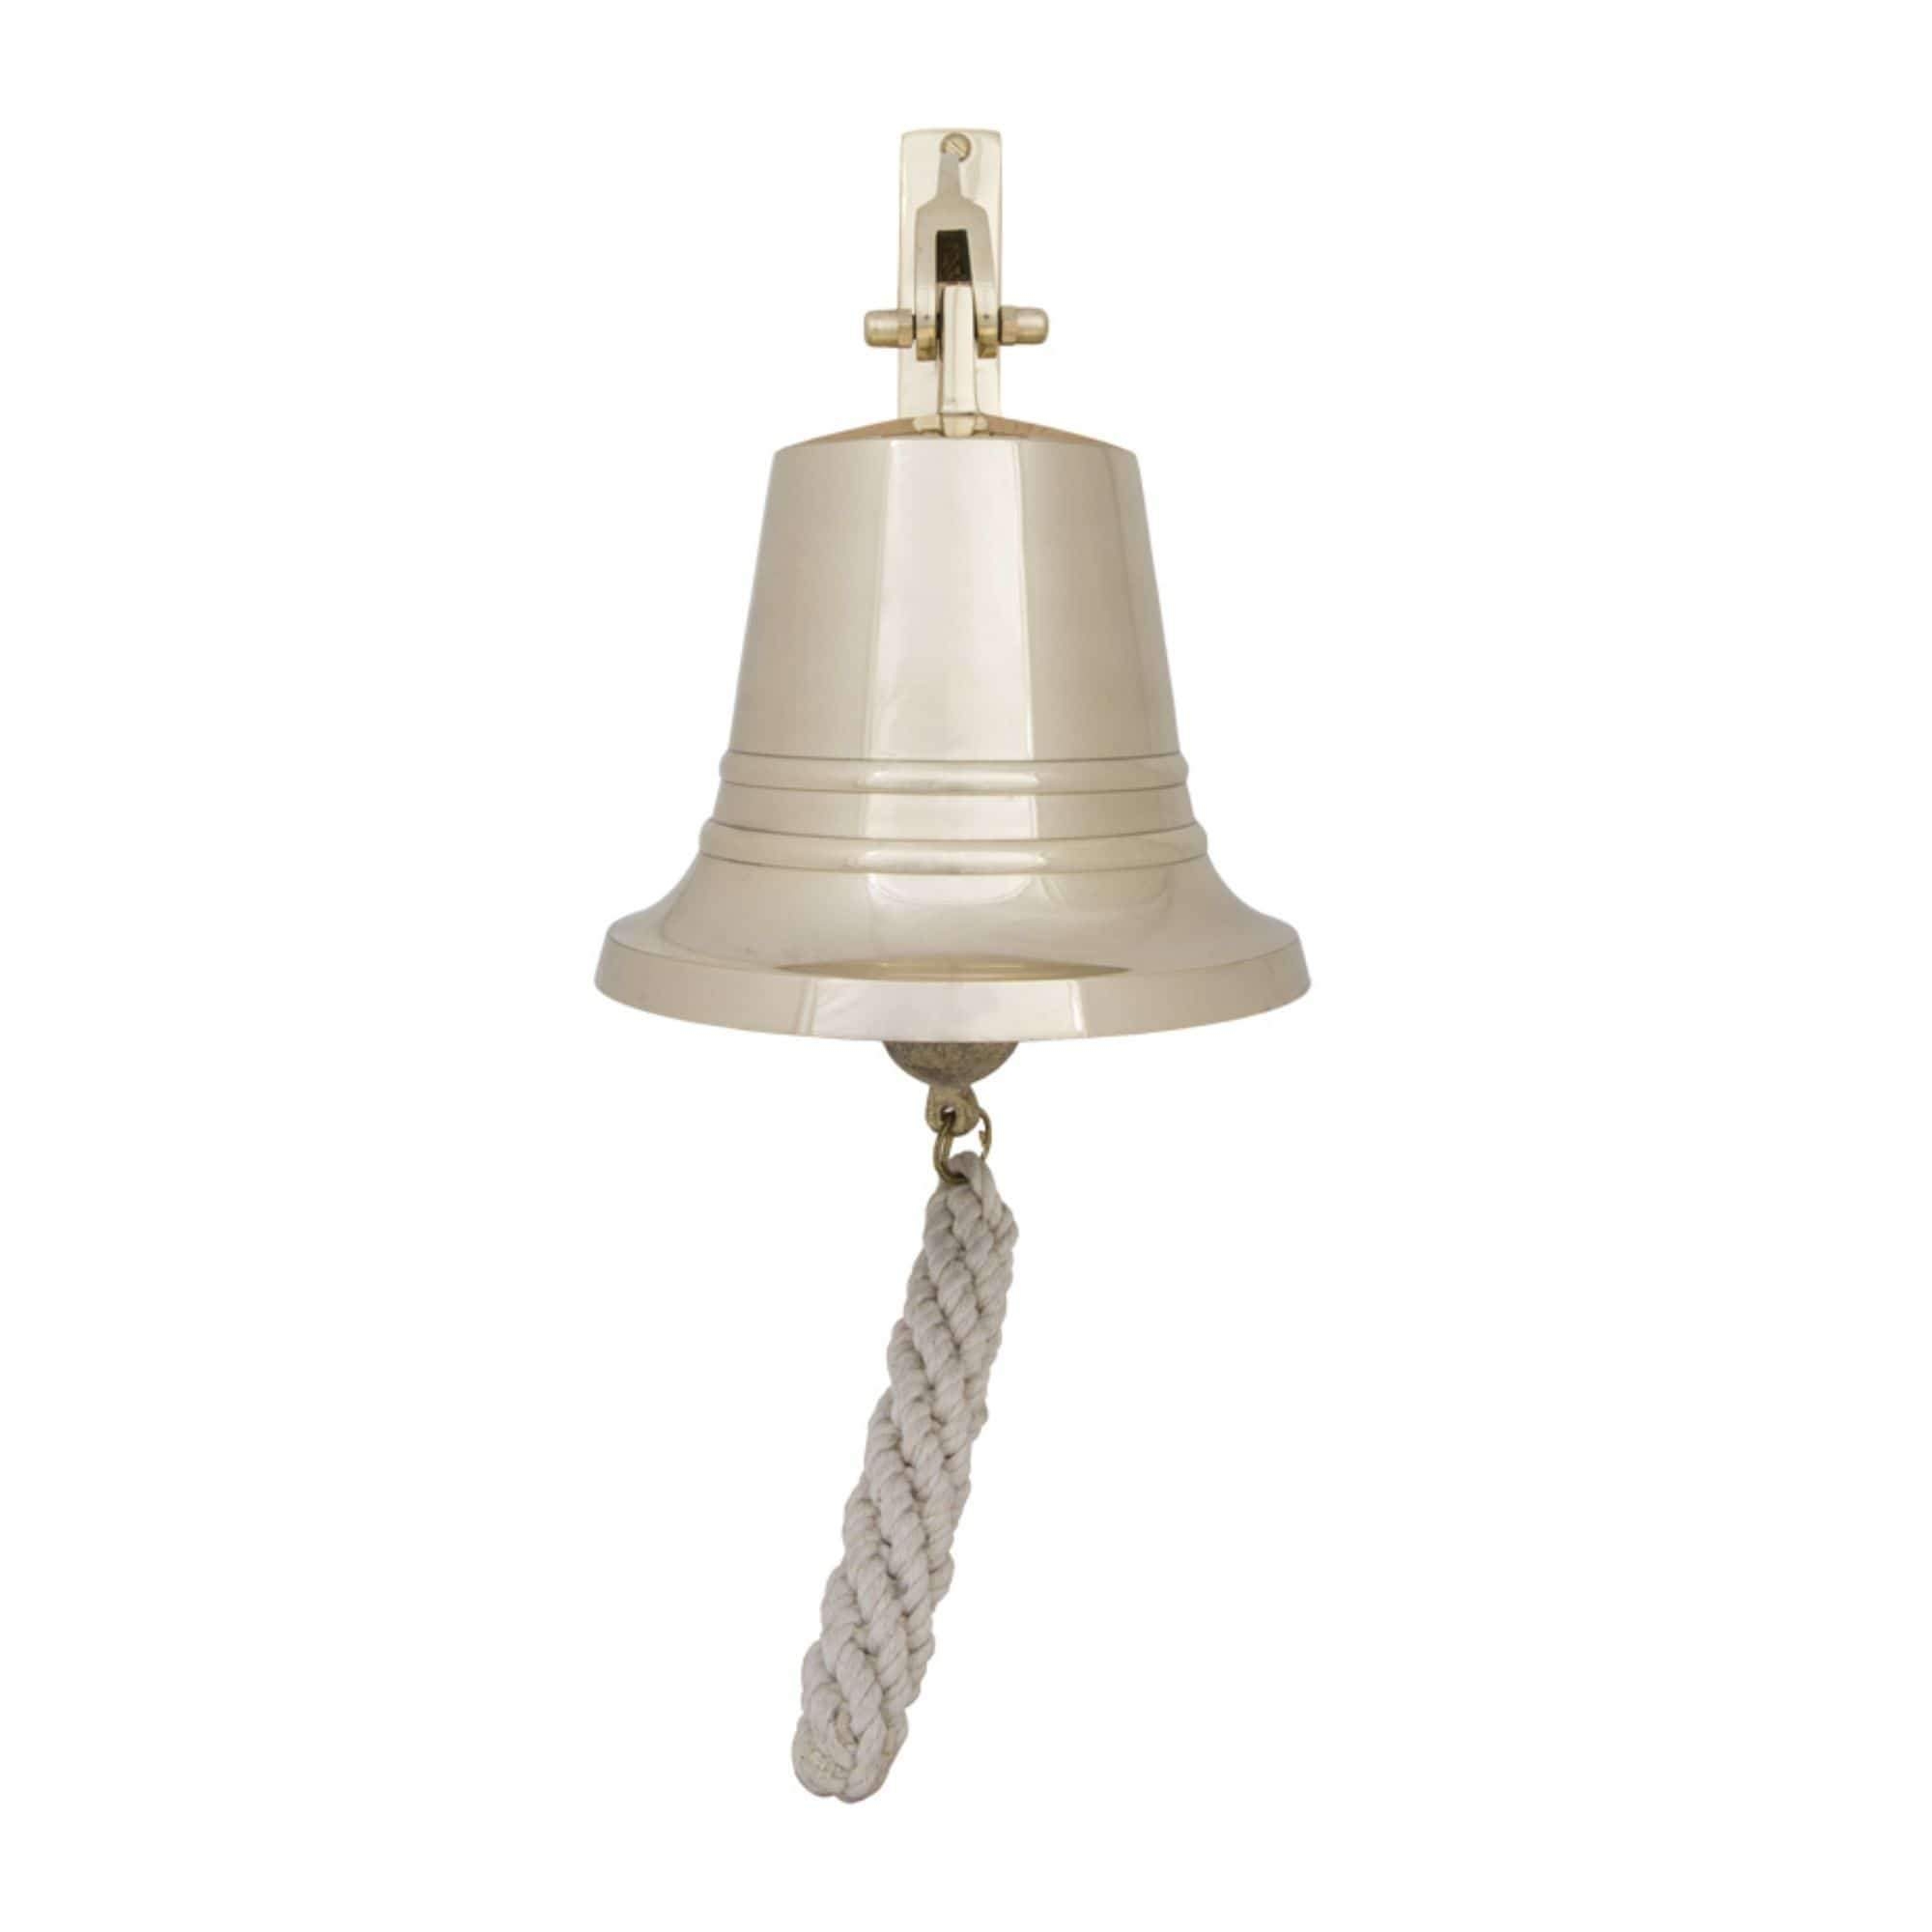 Bell – Solid Brass – 7.5 cm